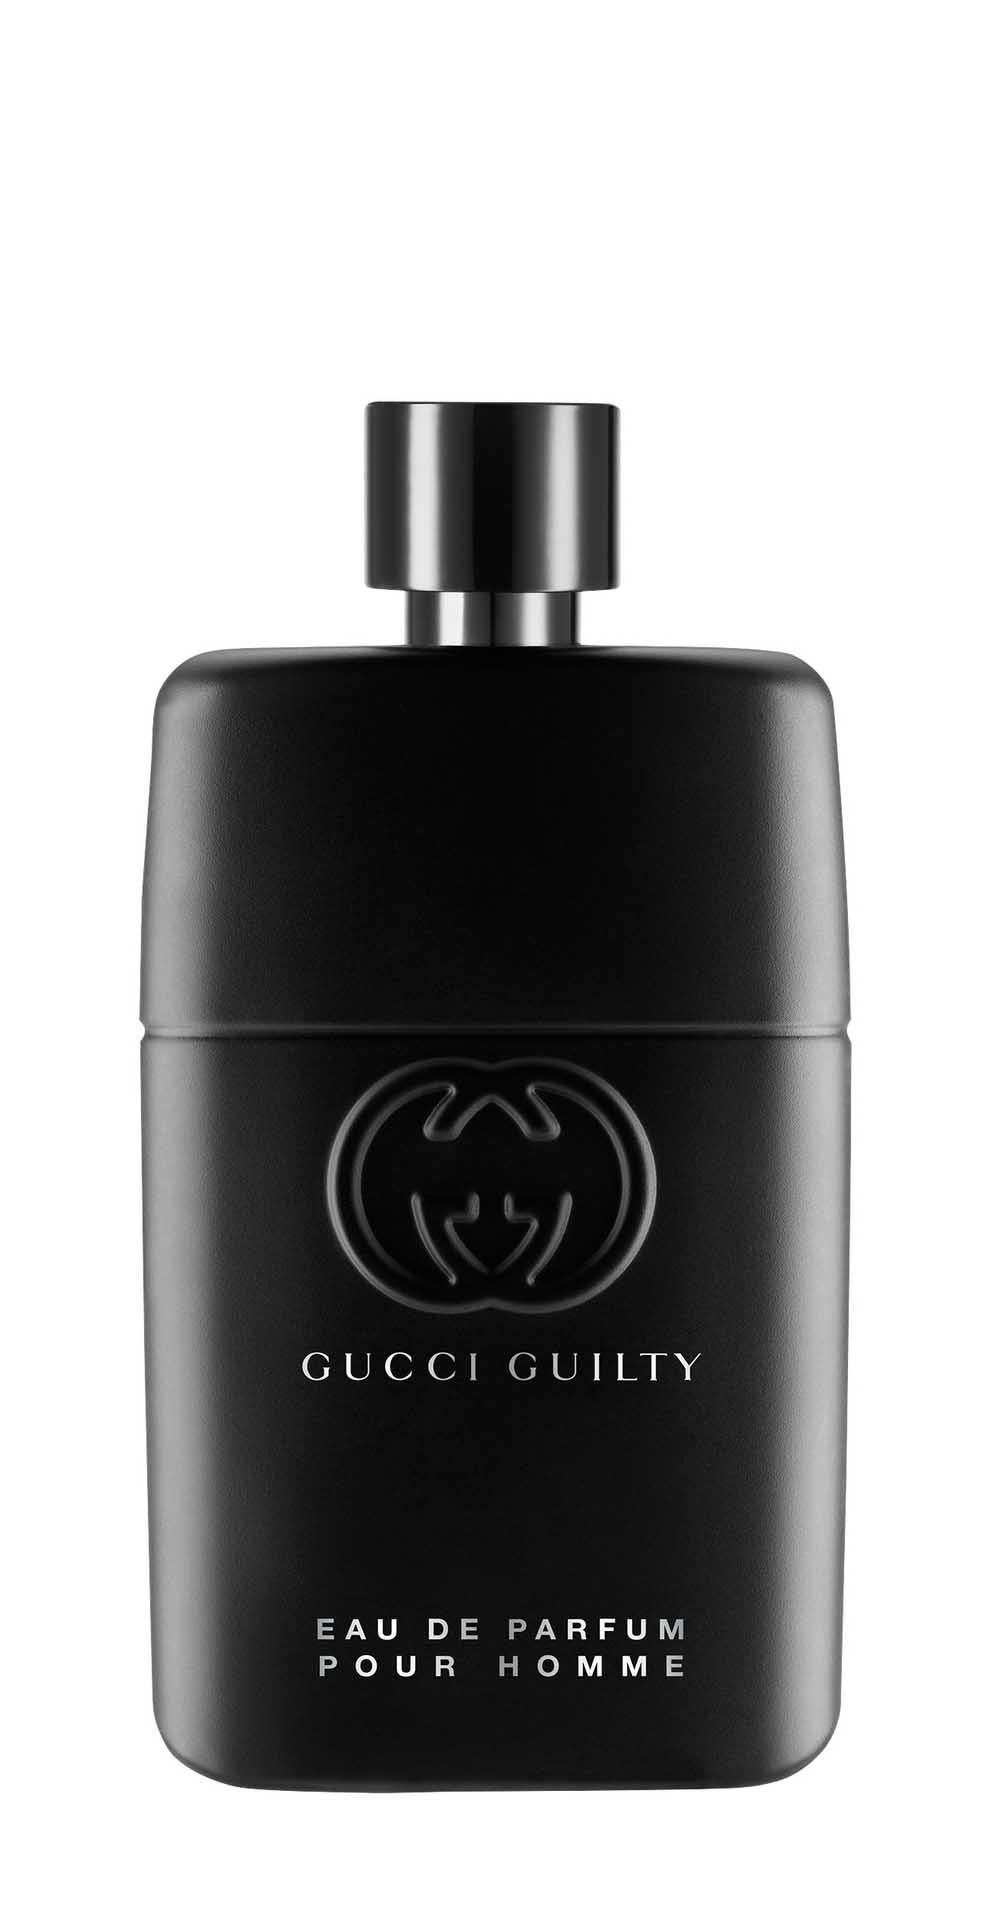 Парфюмерная вода Gucci Guilty Pour Homme Eau de Parfum для мужчин, 90 мл gucci eau de parfum ii 30